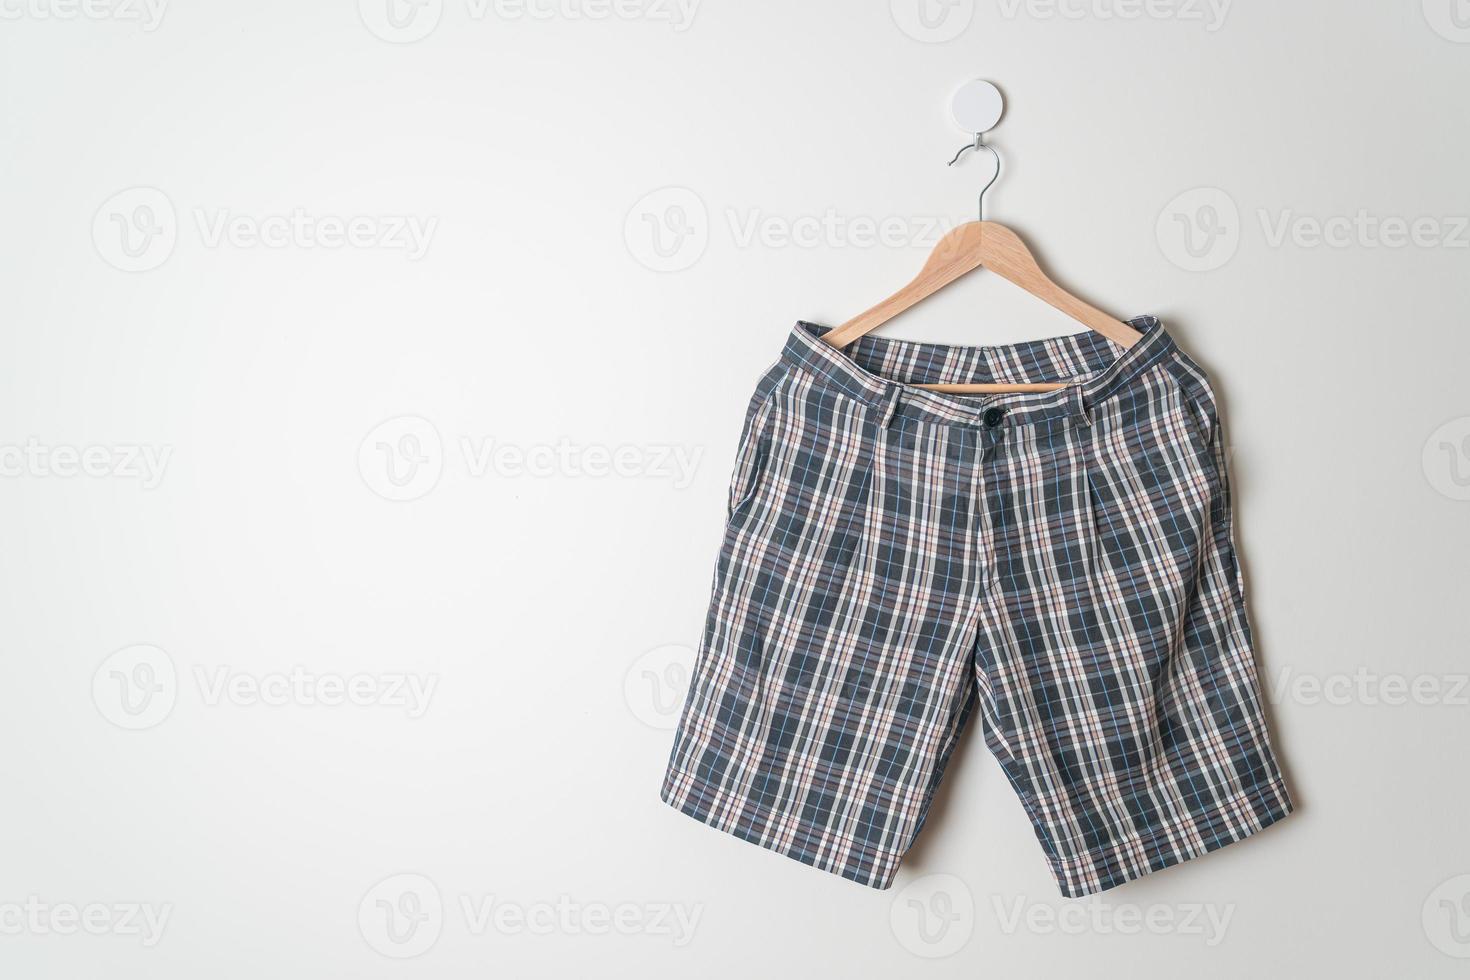 pantalones cortos colgados en la pared foto